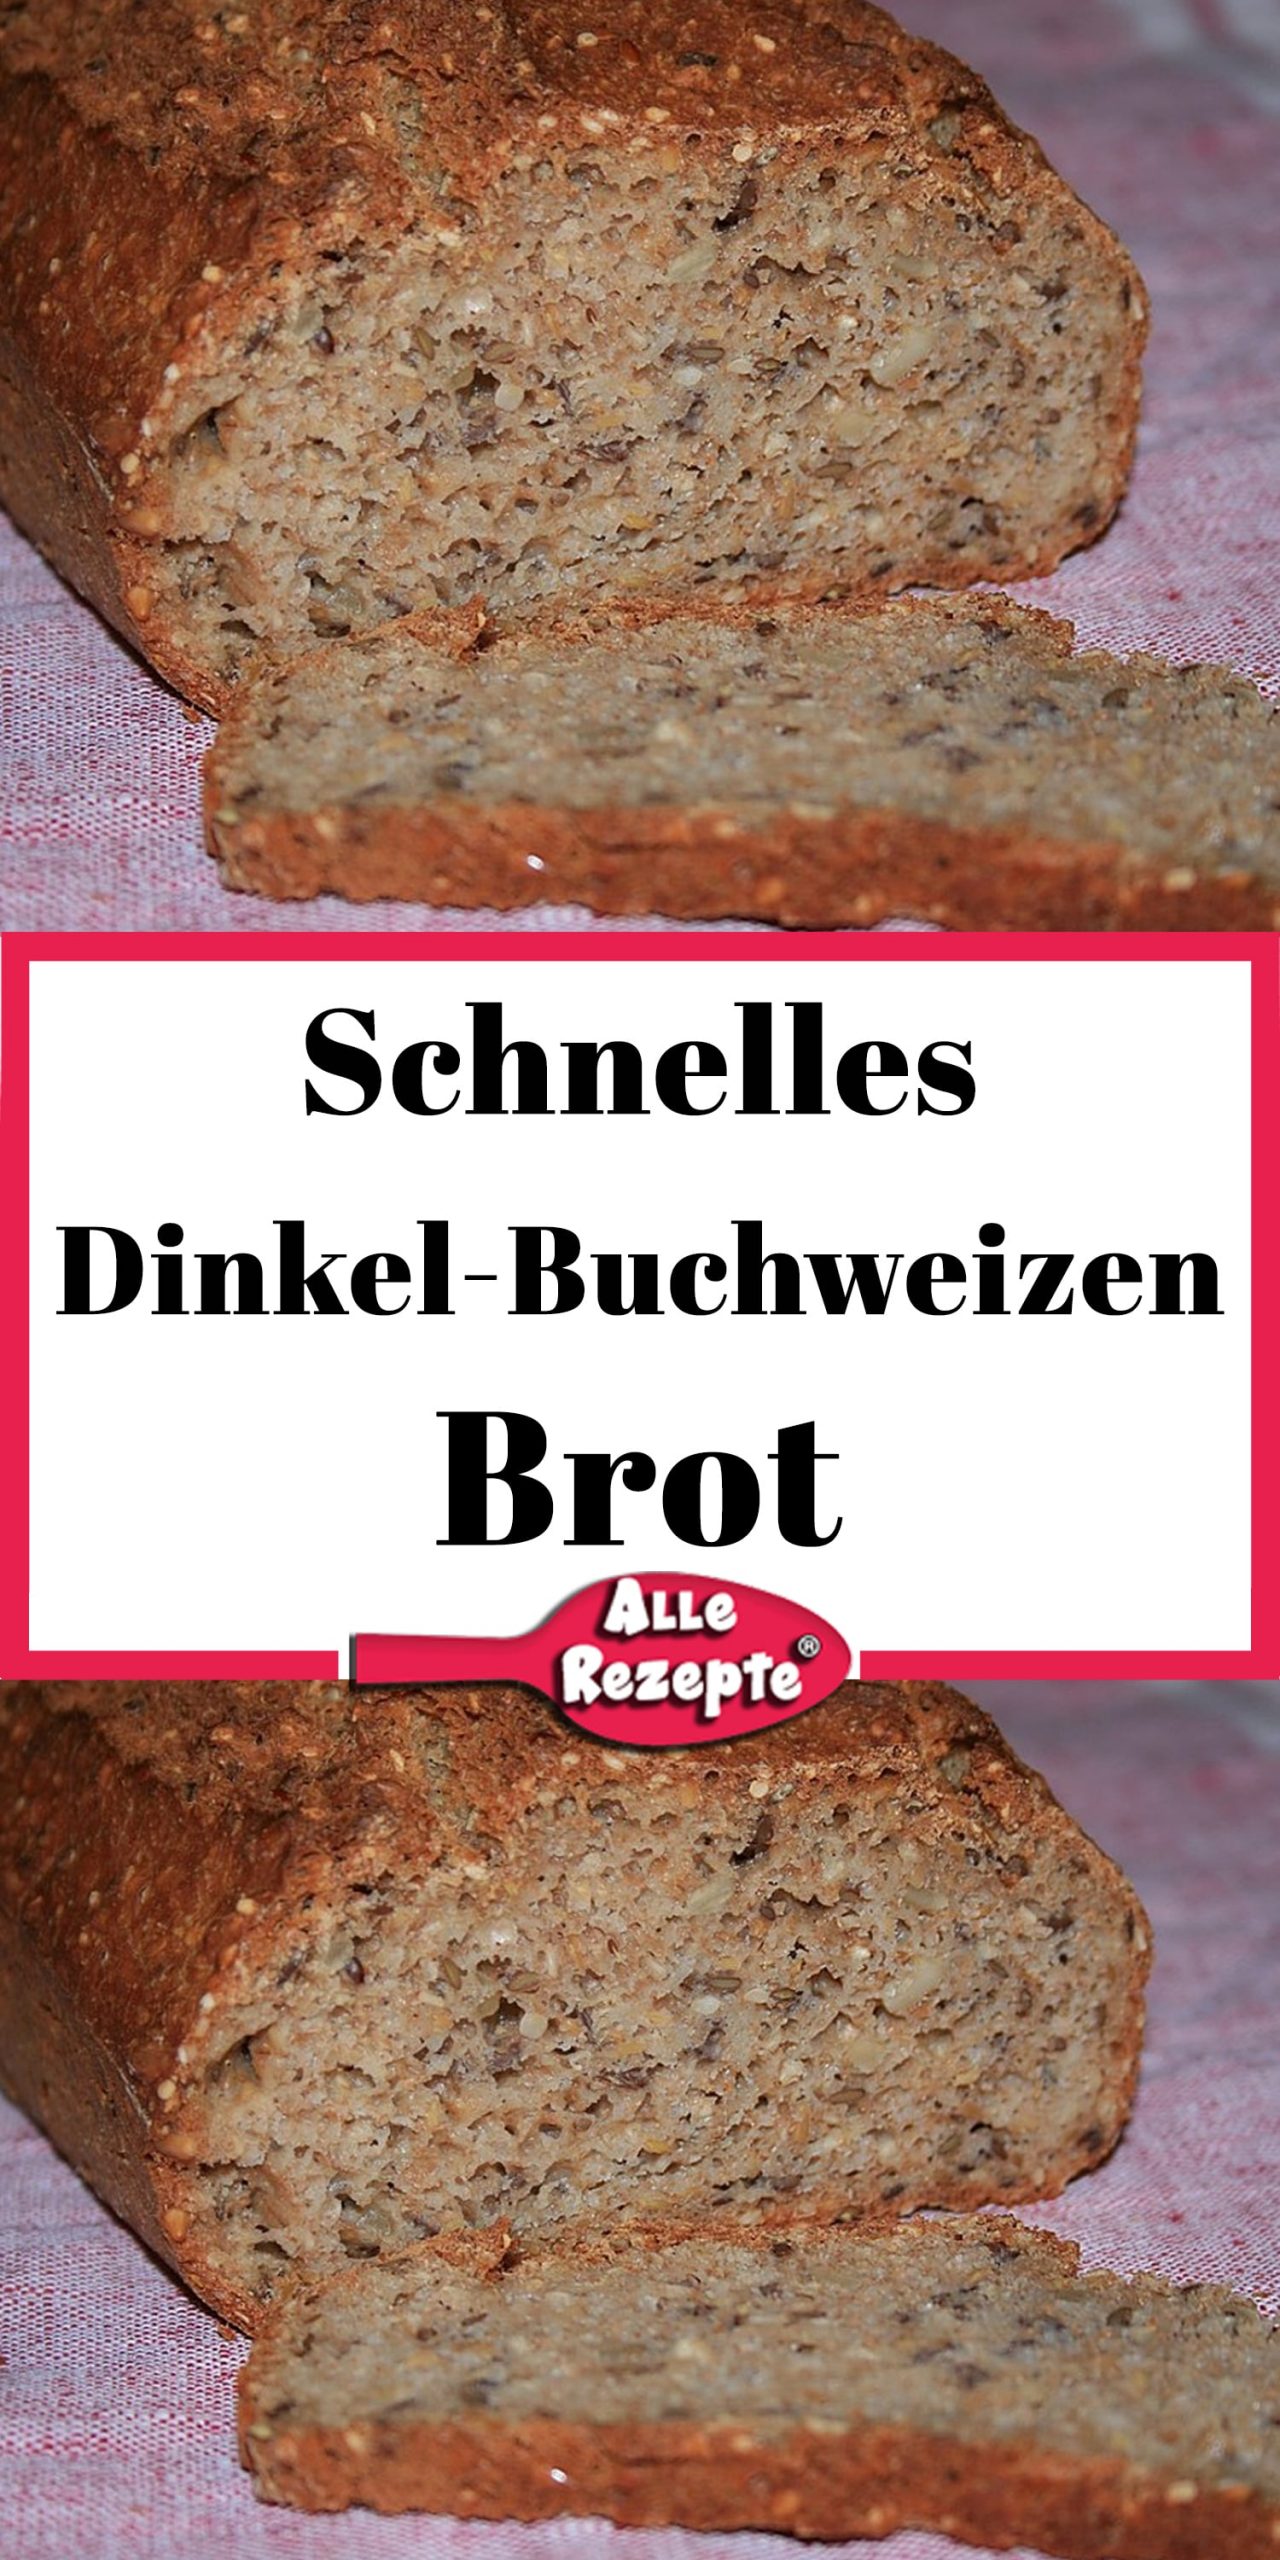 Schnelles Dinkel-Buchweizen-Brot - Alle Rezepte